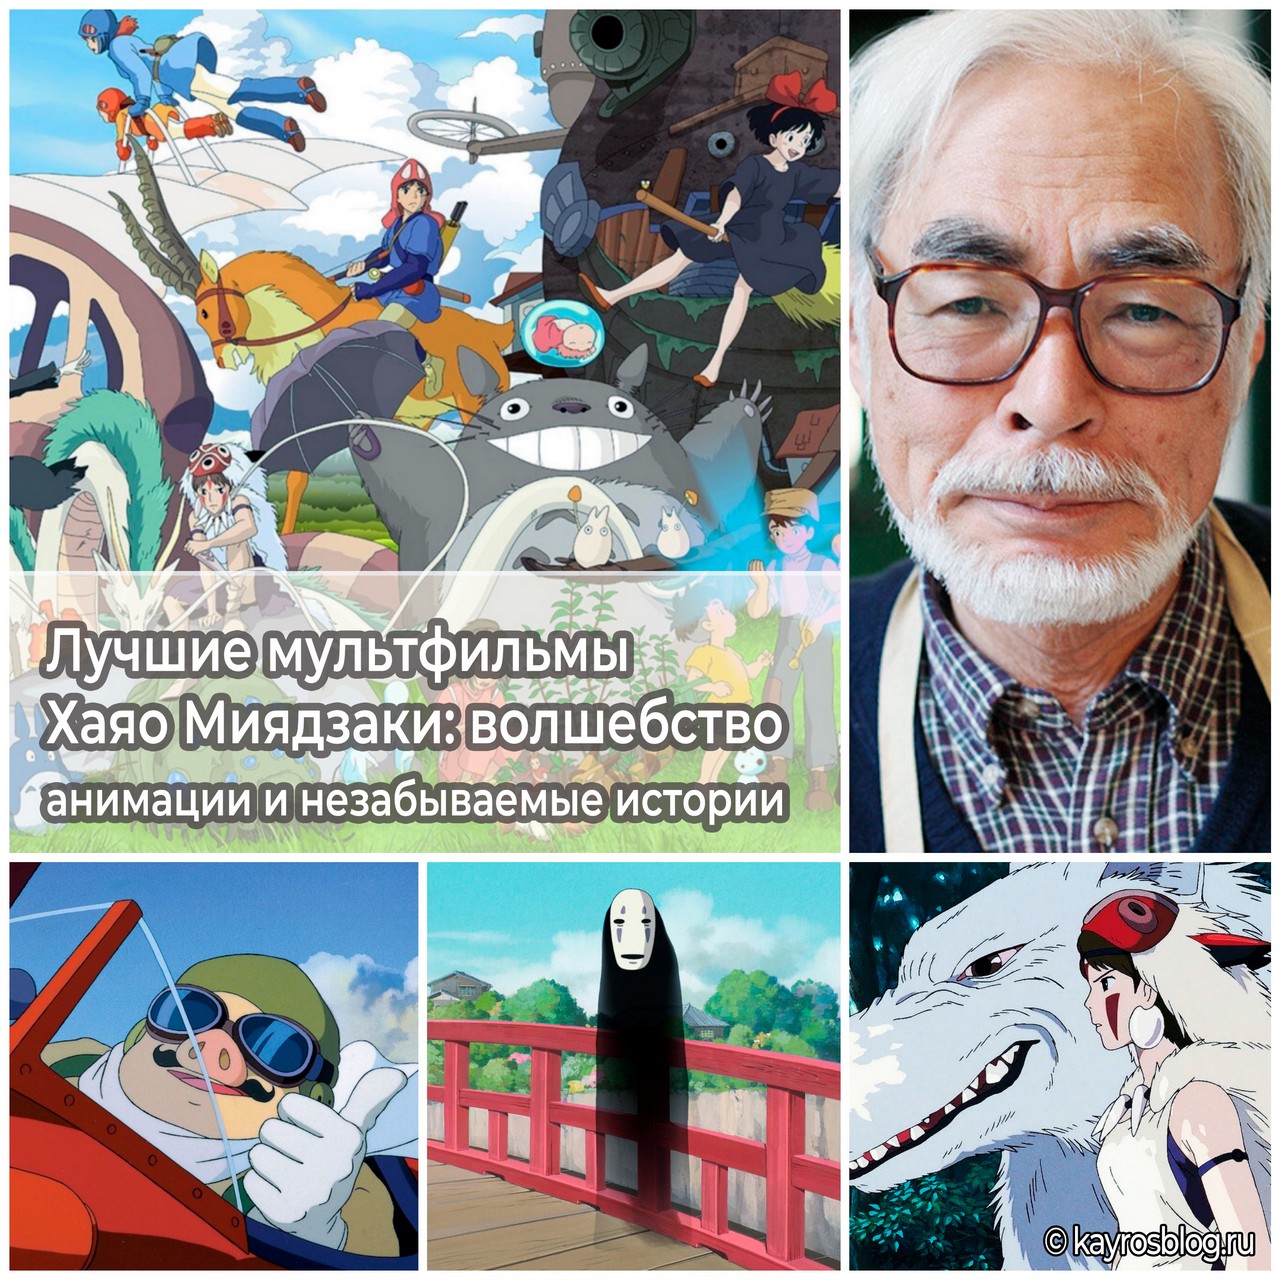 Лучшие мультфильмы Хаяо Миядзаки волшебство анимации и незабываемые истории